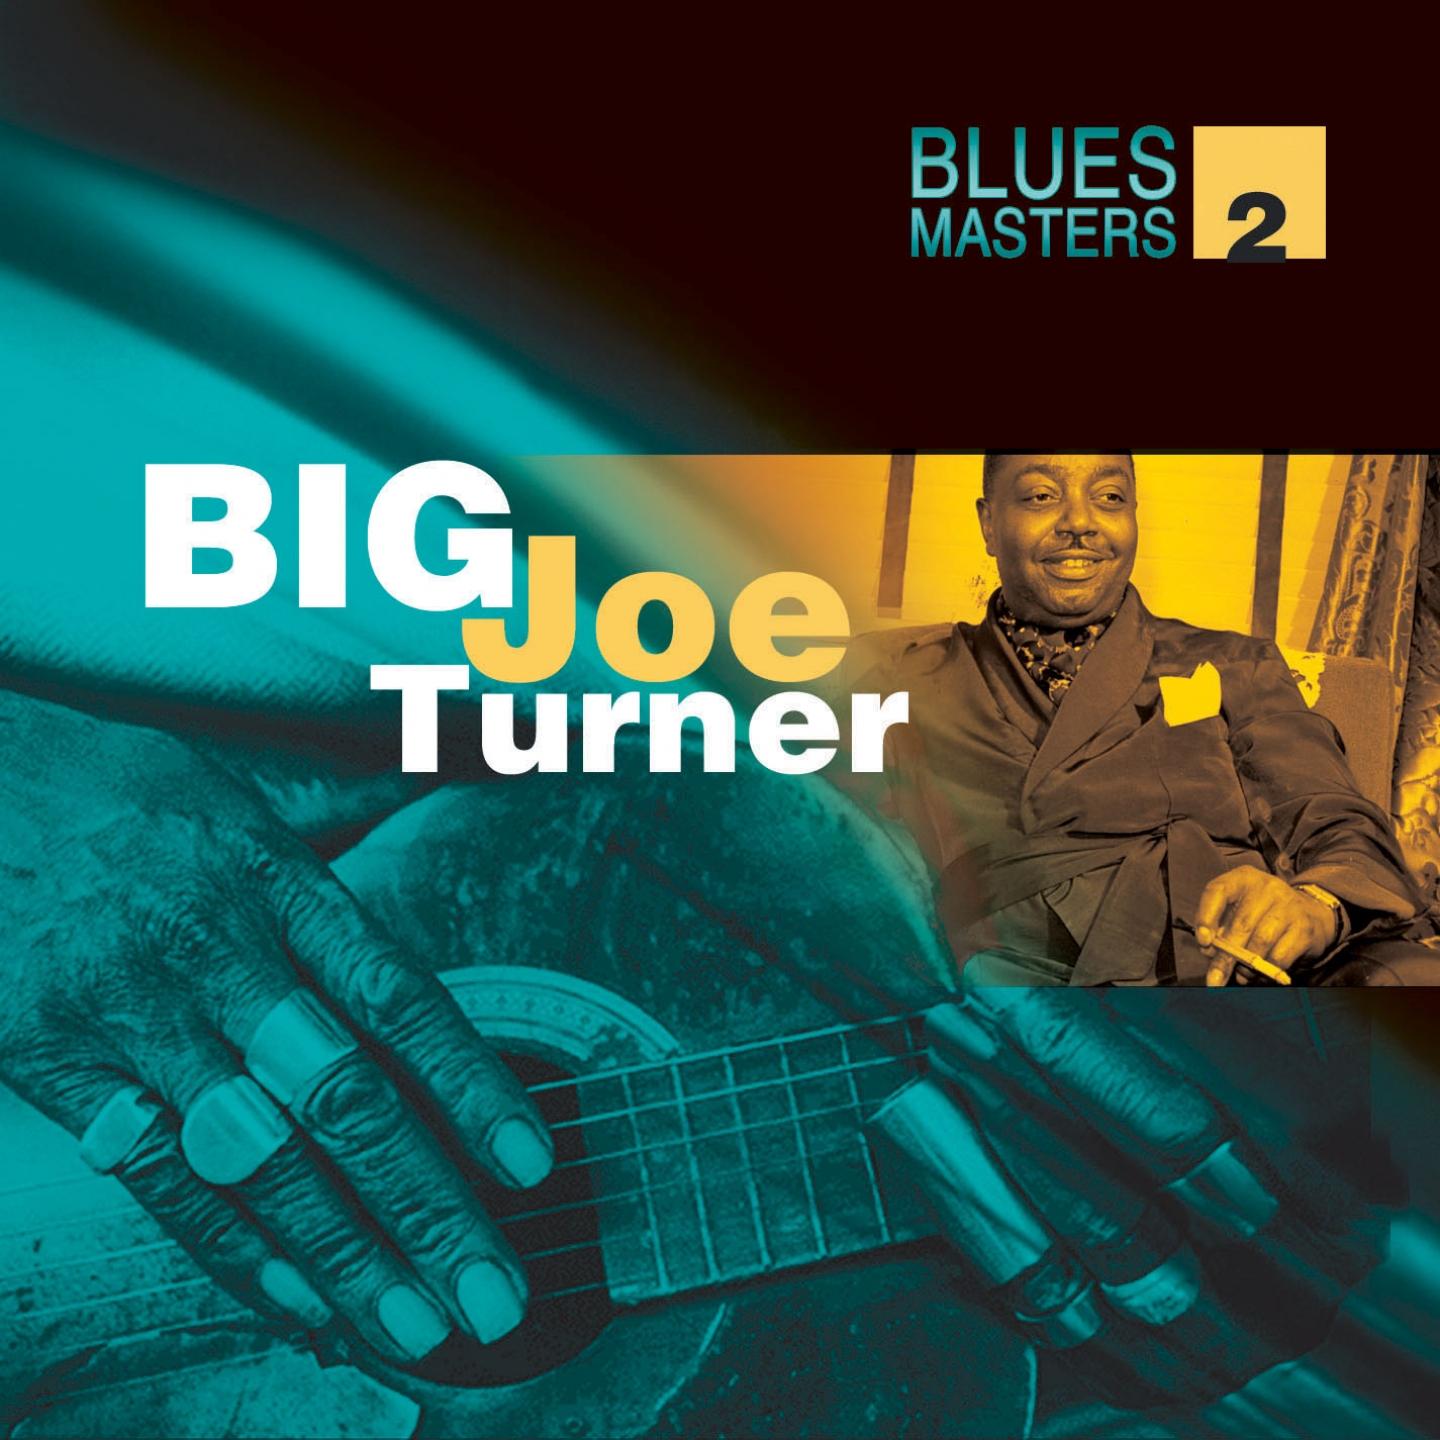 Blues Masters Vol. 2 (Big Joe Turner)